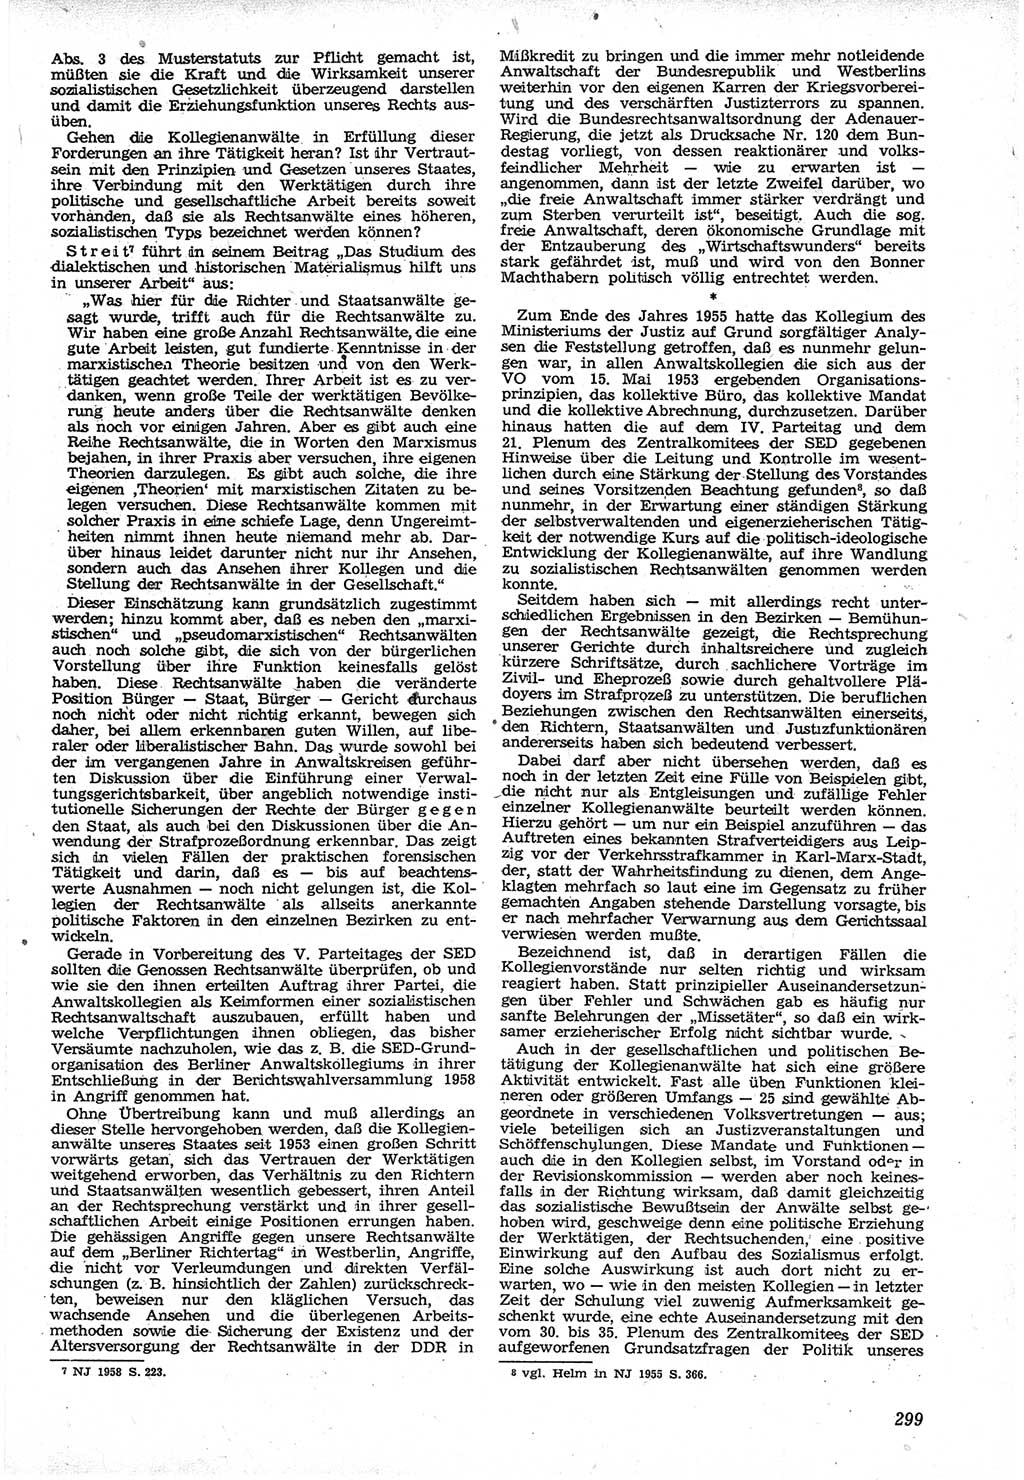 Neue Justiz (NJ), Zeitschrift für Recht und Rechtswissenschaft [Deutsche Demokratische Republik (DDR)], 12. Jahrgang 1958, Seite 299 (NJ DDR 1958, S. 299)